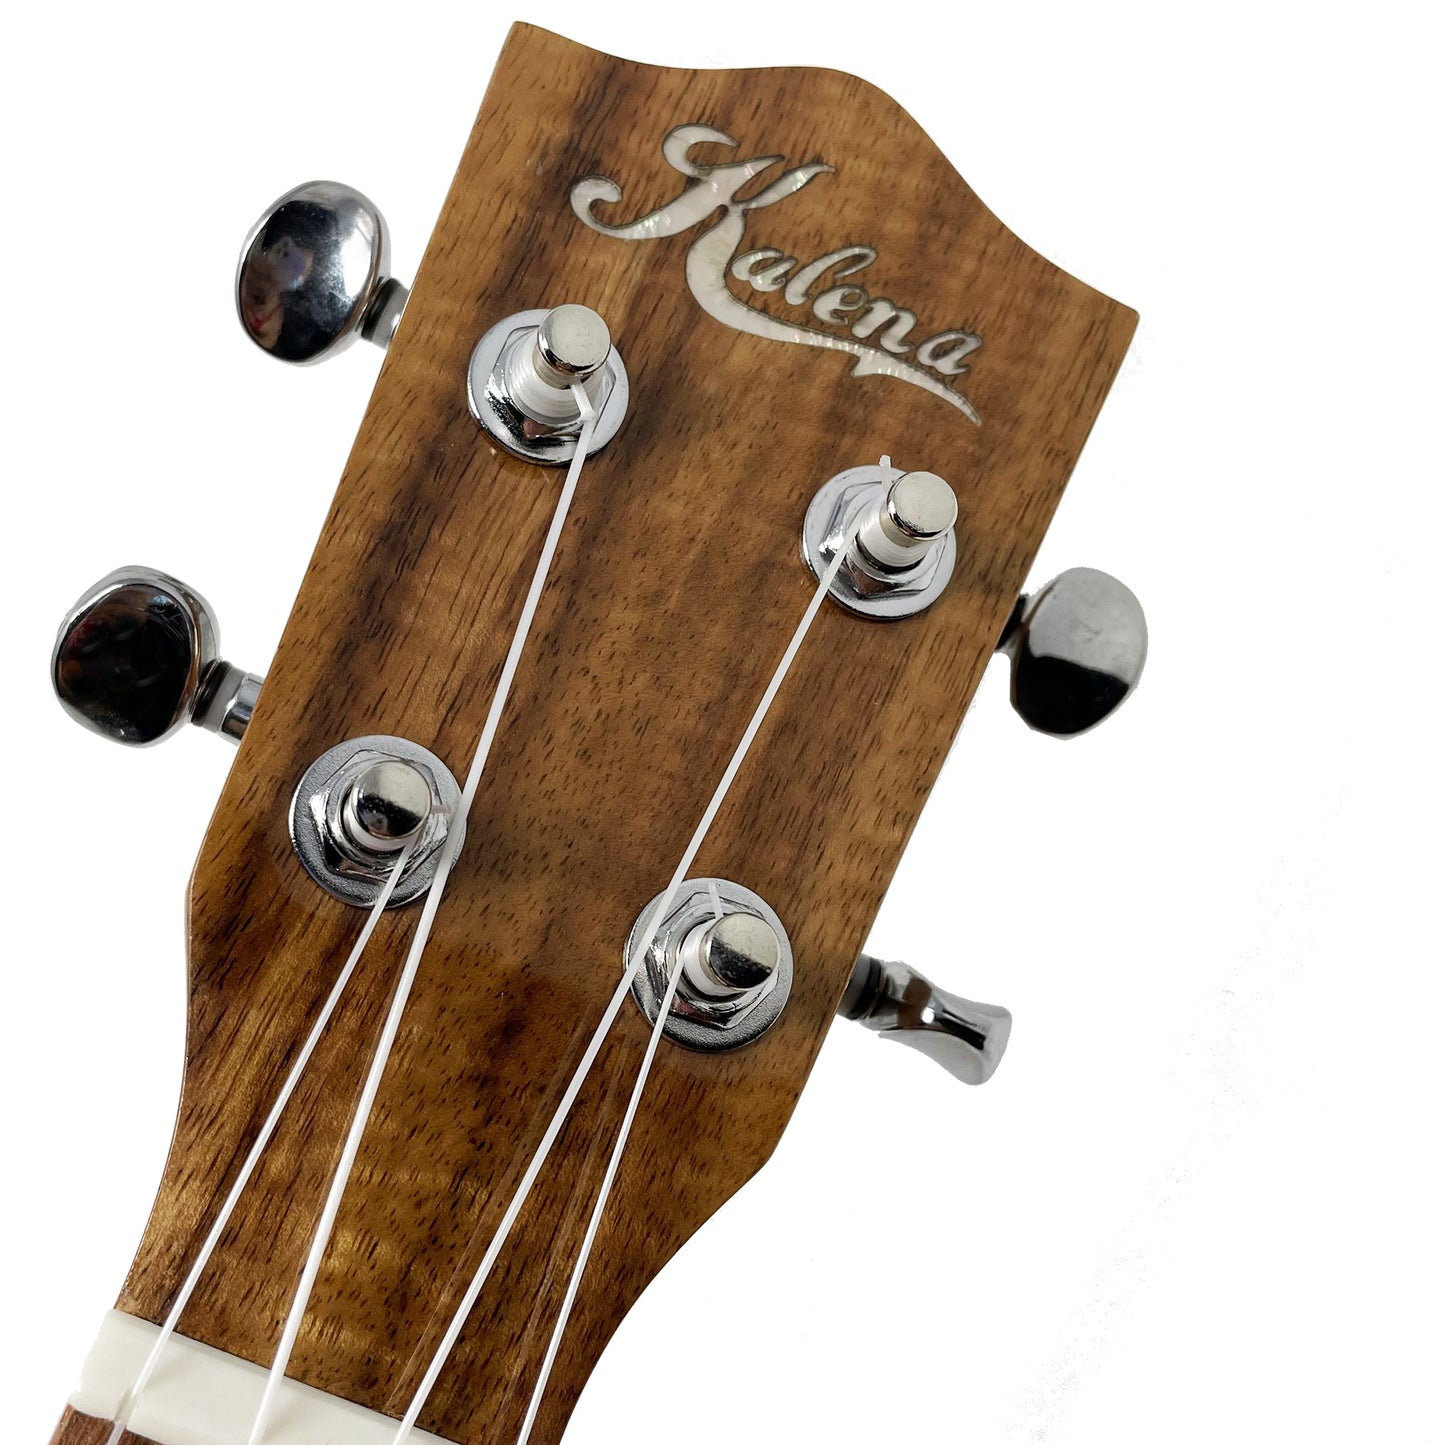 Kalena Solid Top Acacia Hibiscus Edition Concert Longneck Ukulele Complete Set: Strings, Picks, Strap, Digital Tuner, Padded Case, Starter Guide